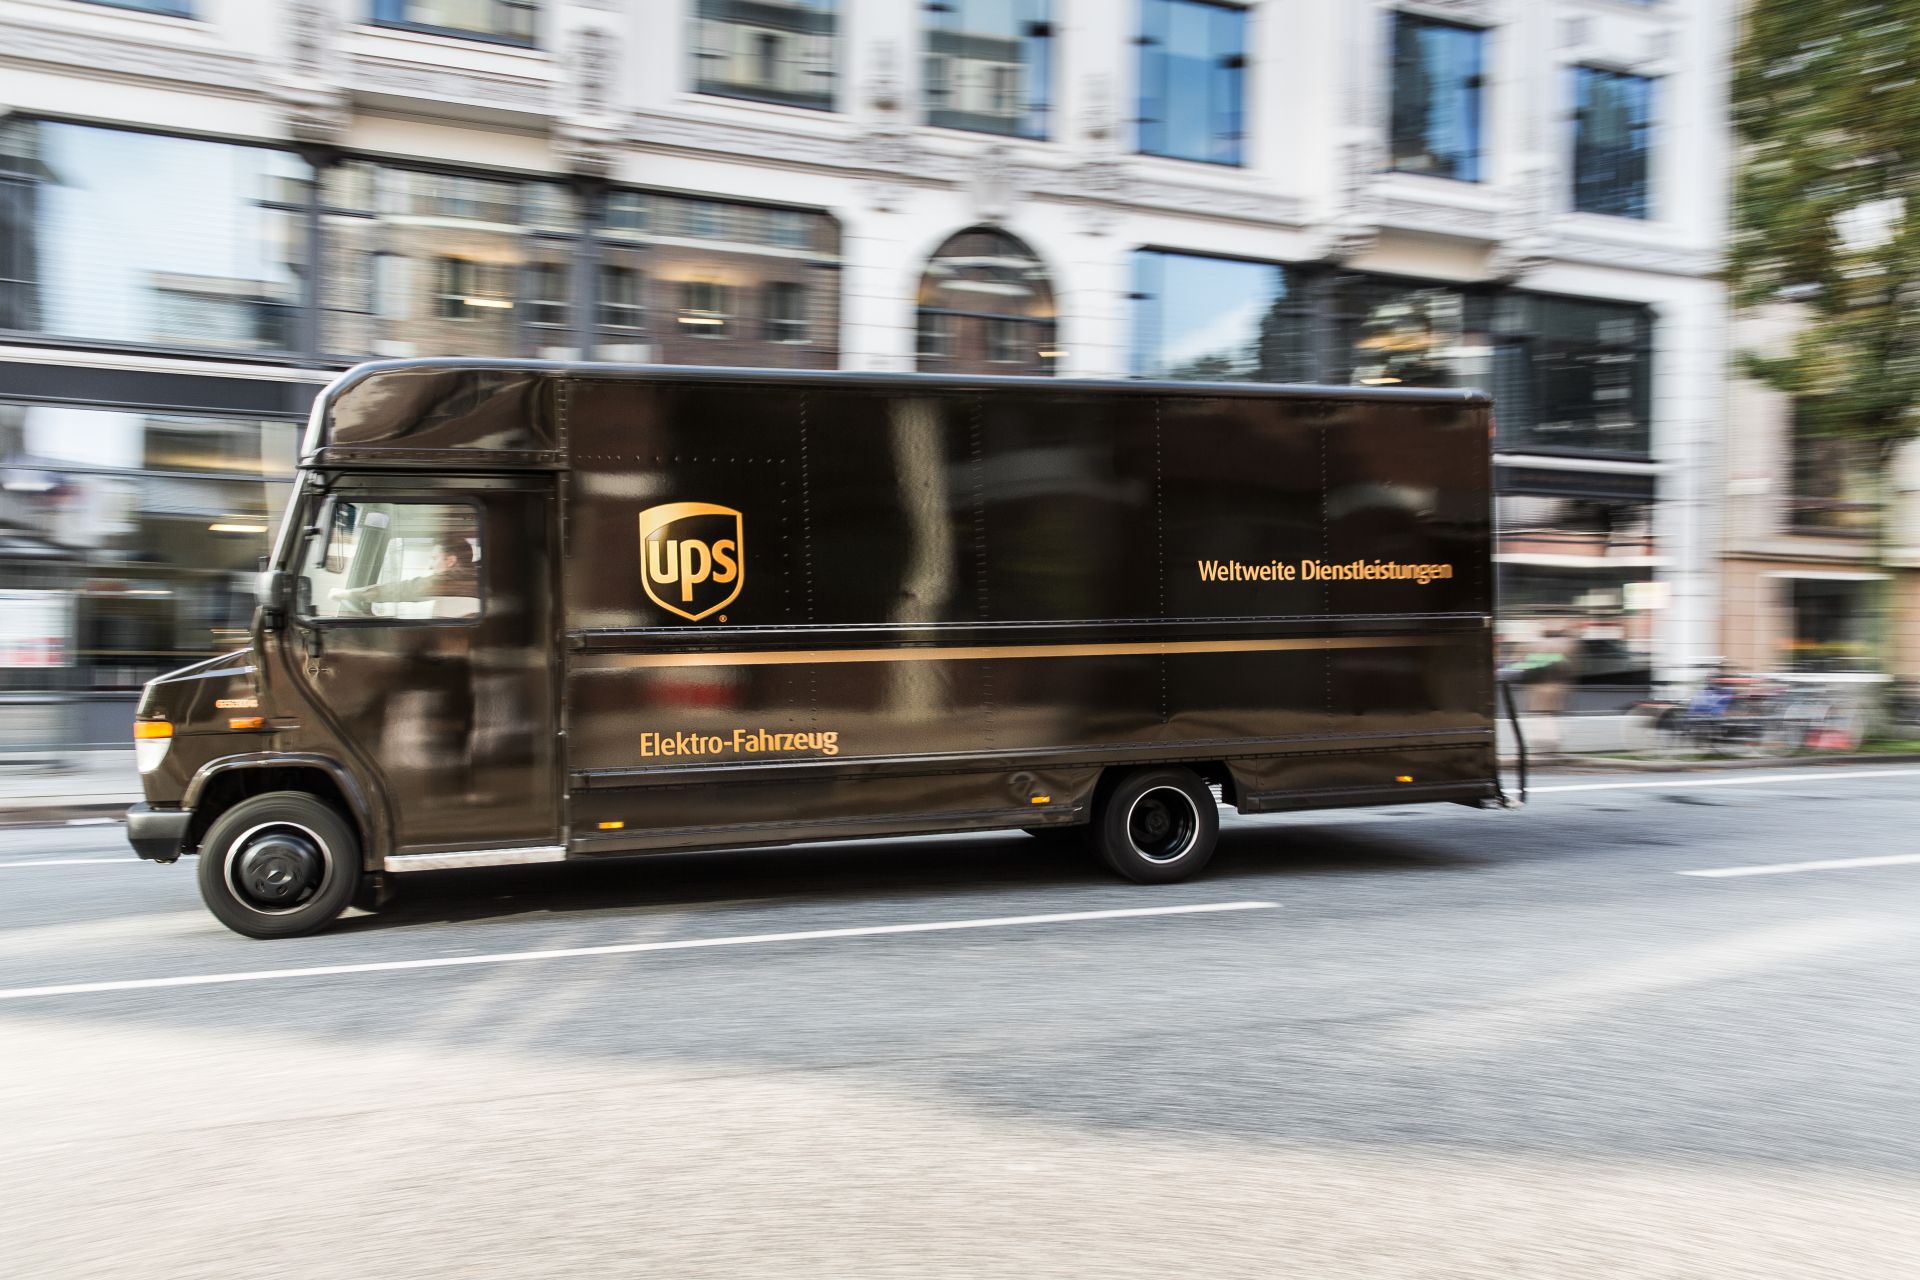 UPS künftig mit E-Flotte unterwegs | SMATRICS